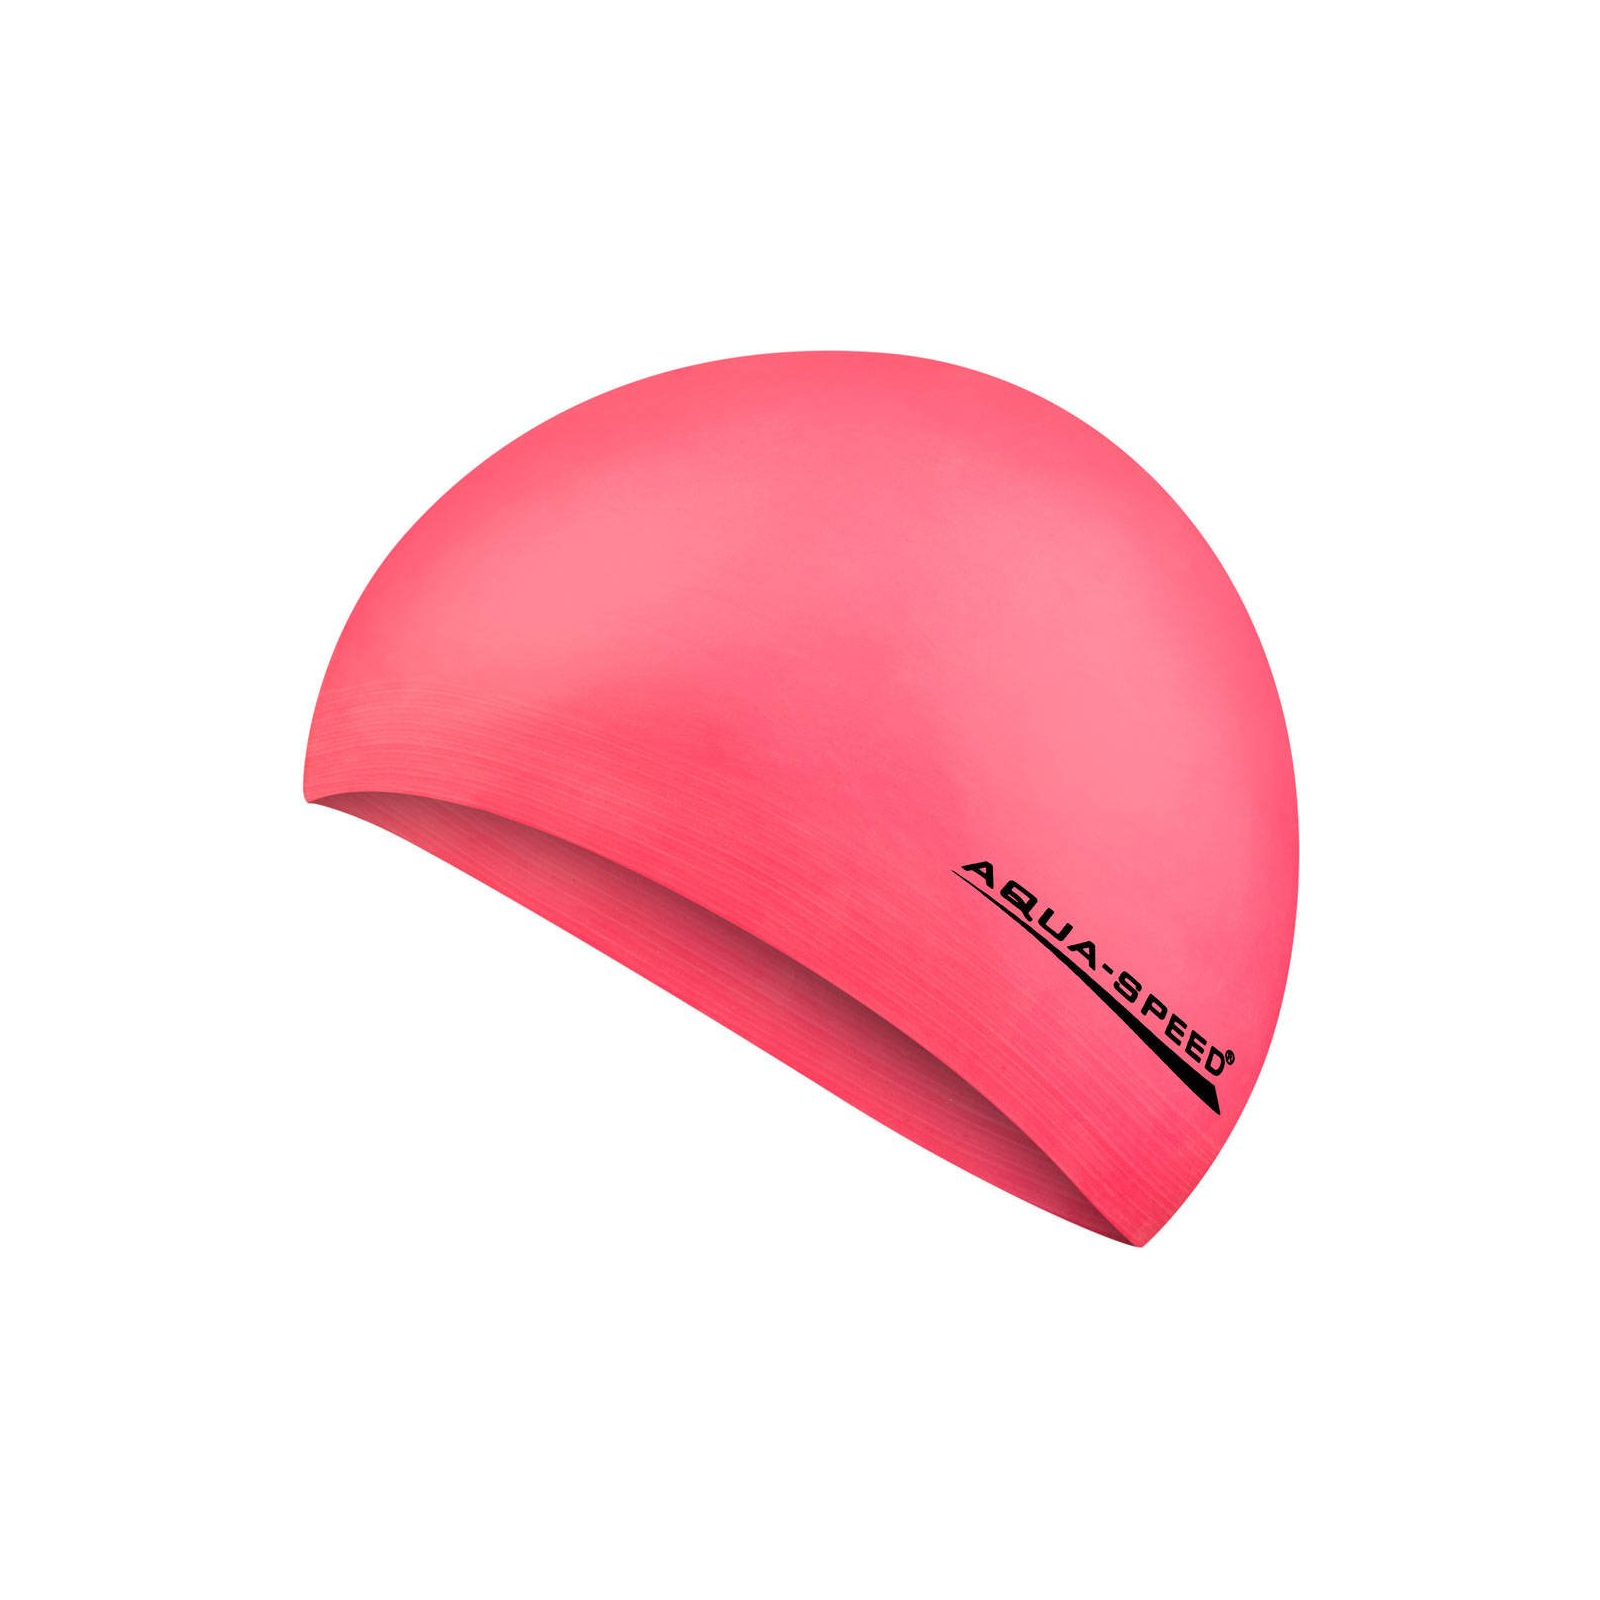 Шапка для плавания Aqua Speed Soft Latex 122-03 5726 неоновий рожевий Уні OSFM (5908217657268)